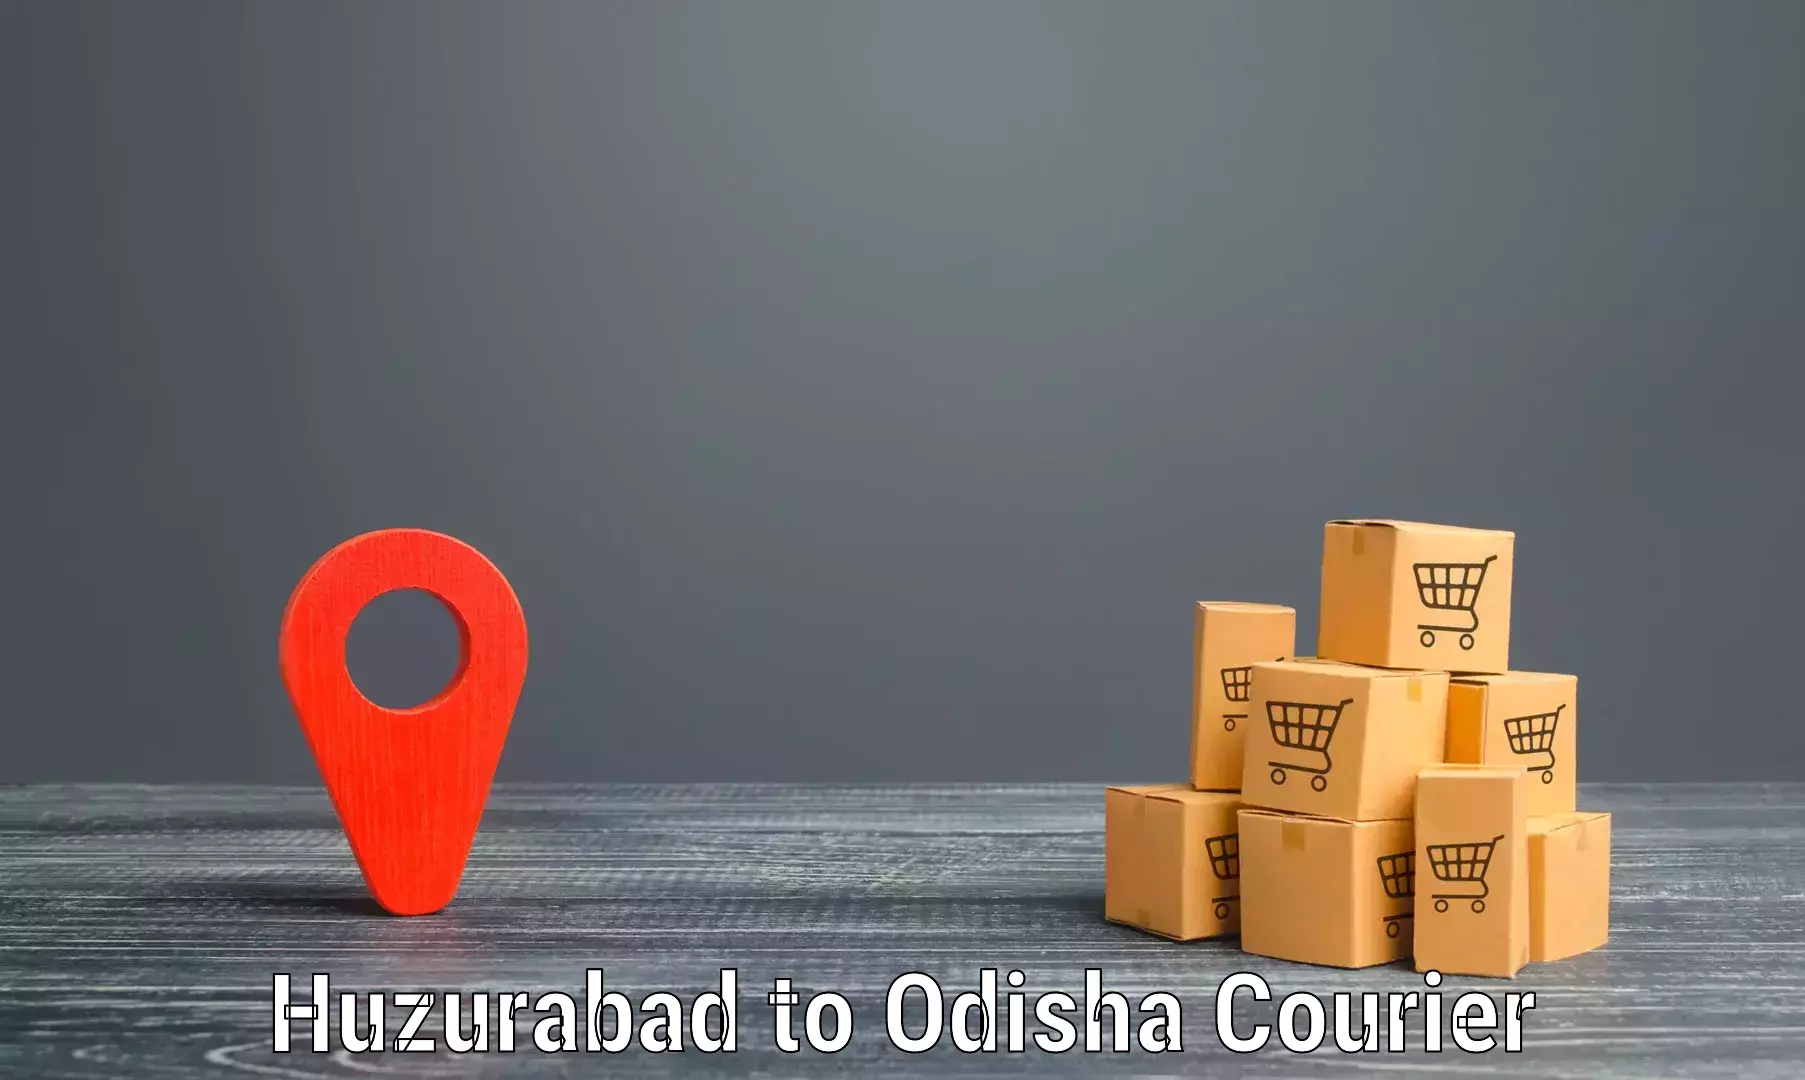 Cargo delivery service Huzurabad to IIT Bhubaneshwar